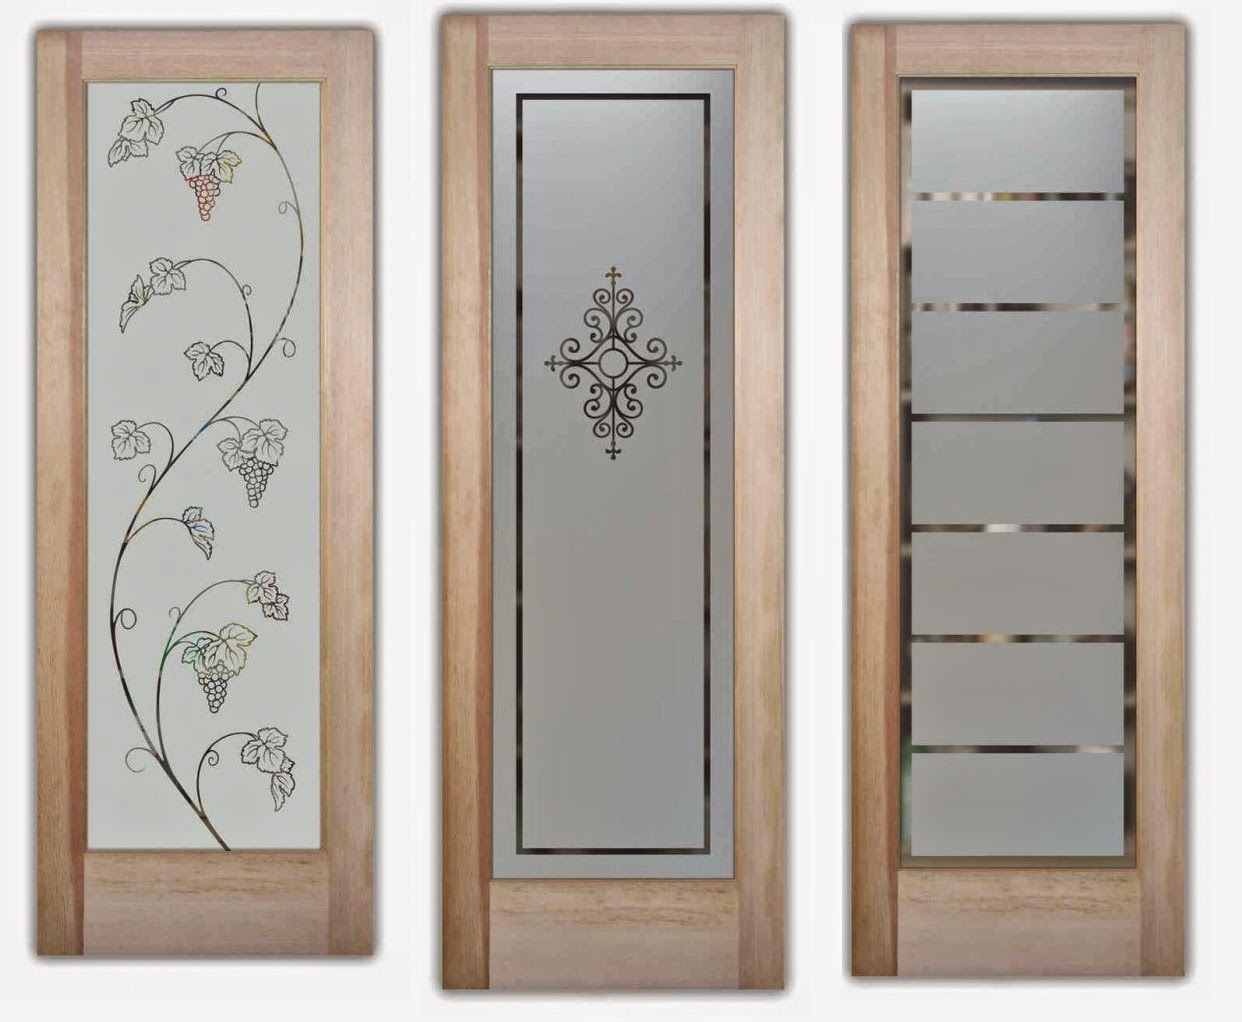  Etched  Doors  Doors  Etched  Glass  Etched  Glass  Design  